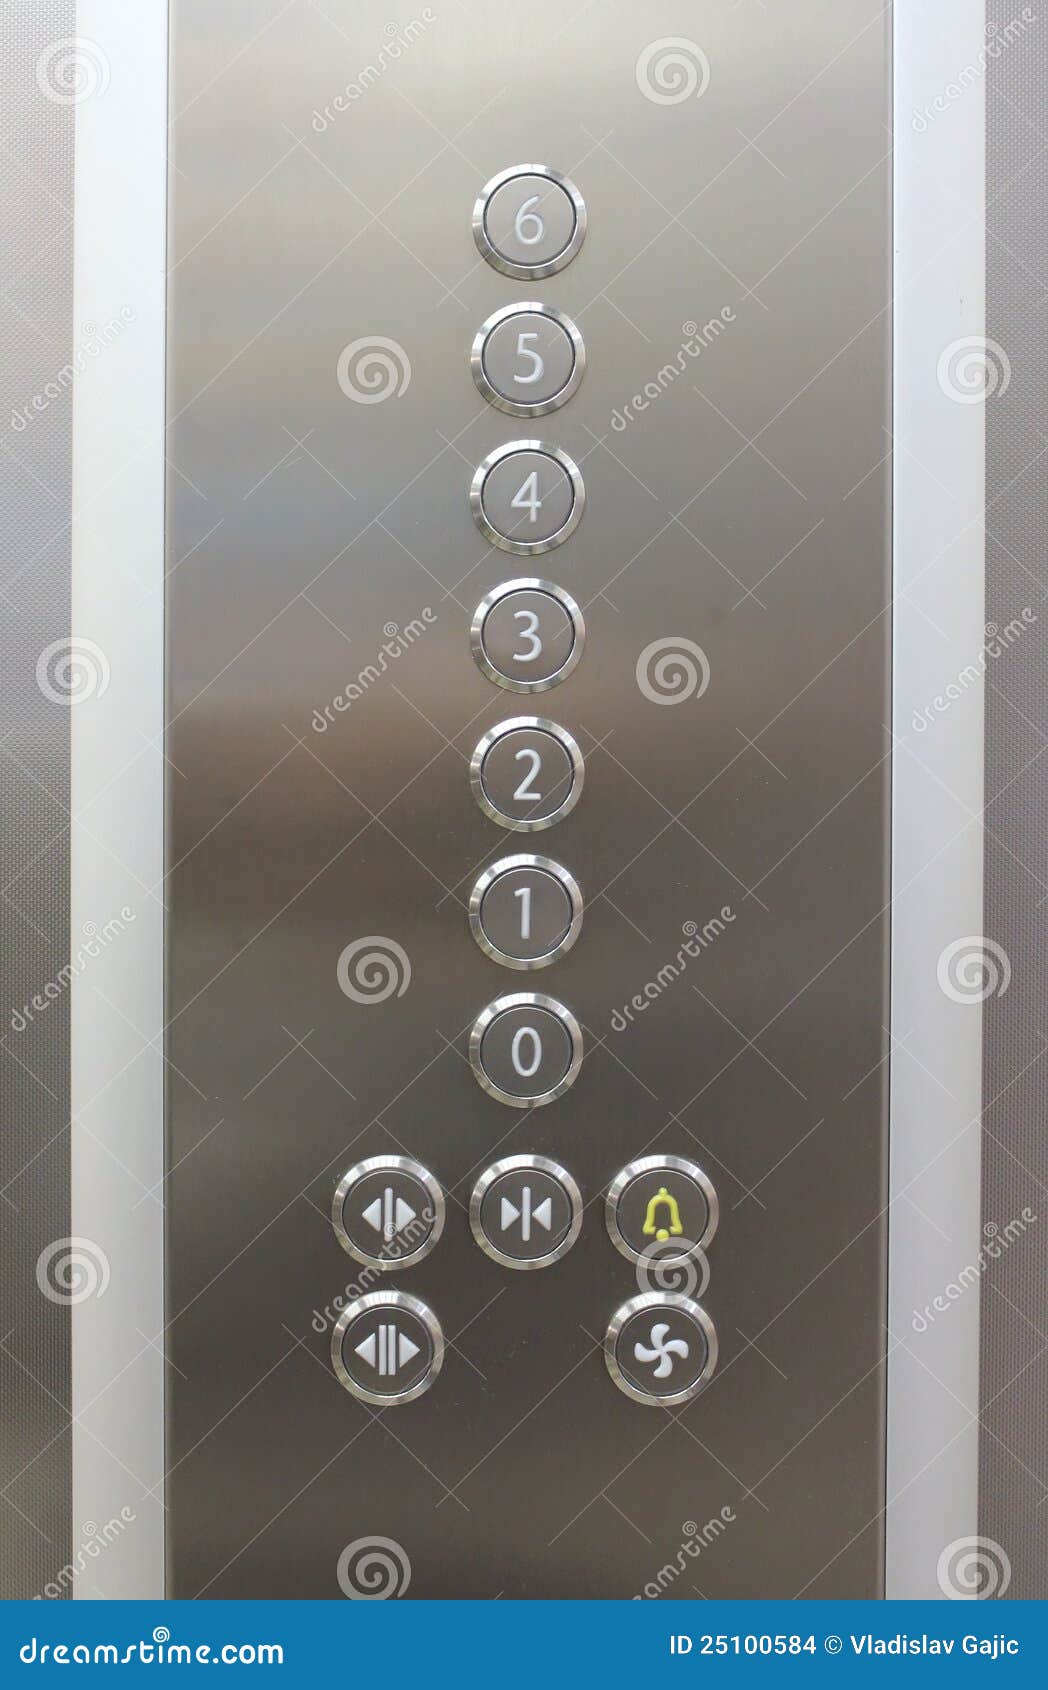 Elevator Floor Numbers Stock Photo Image Of Doorways 25100584